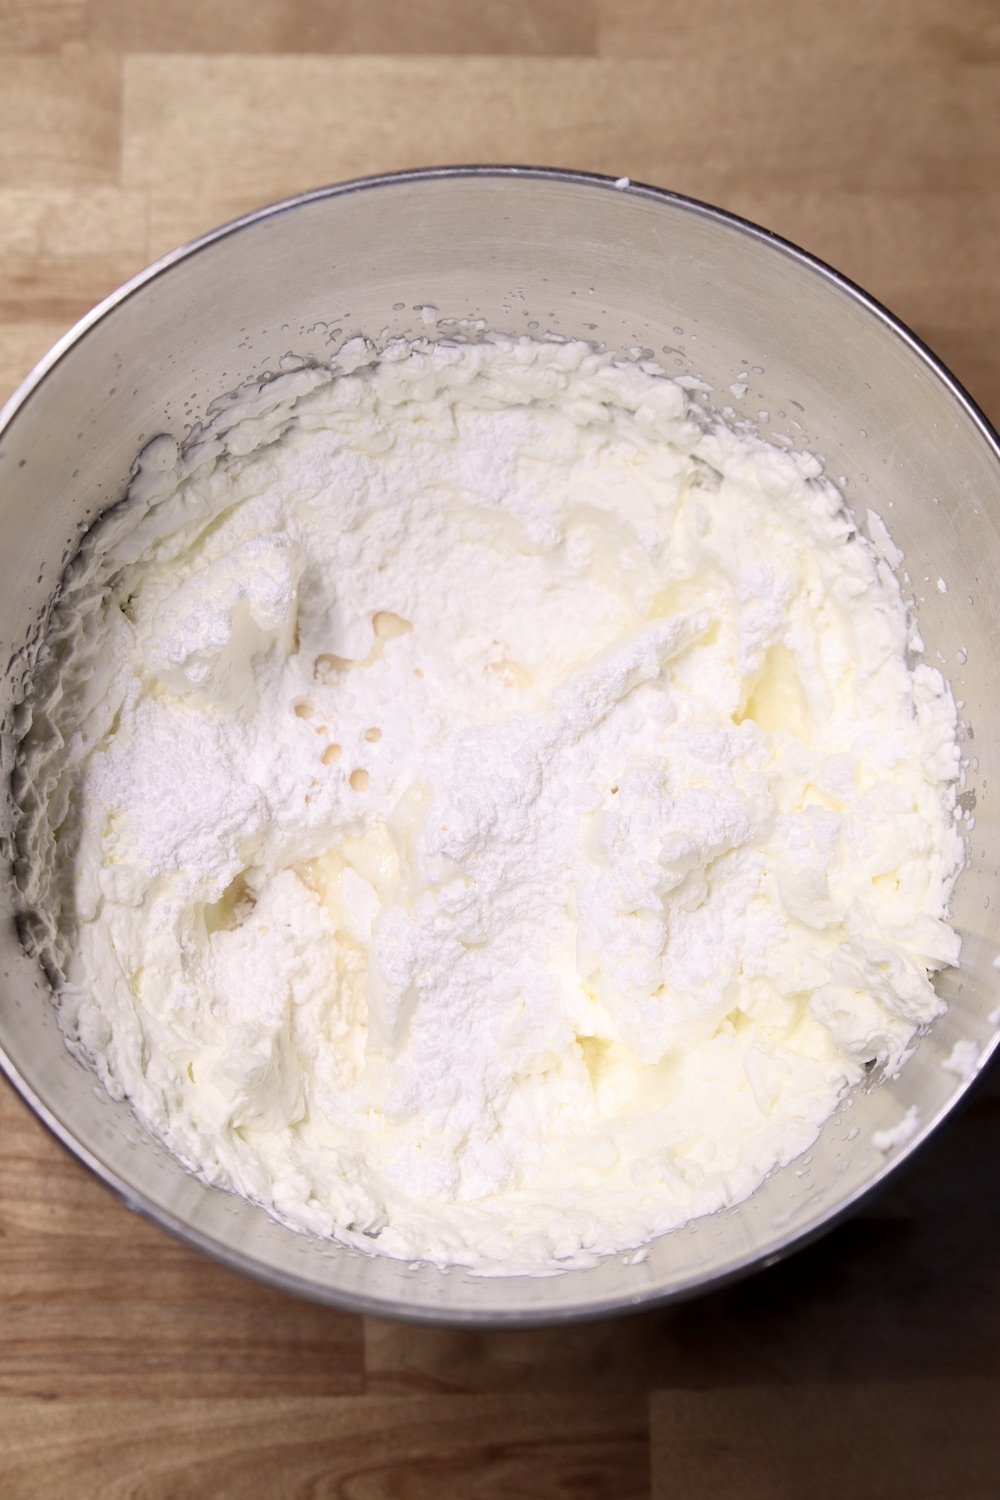 powdered sugar and vanilla in a mixer bowl